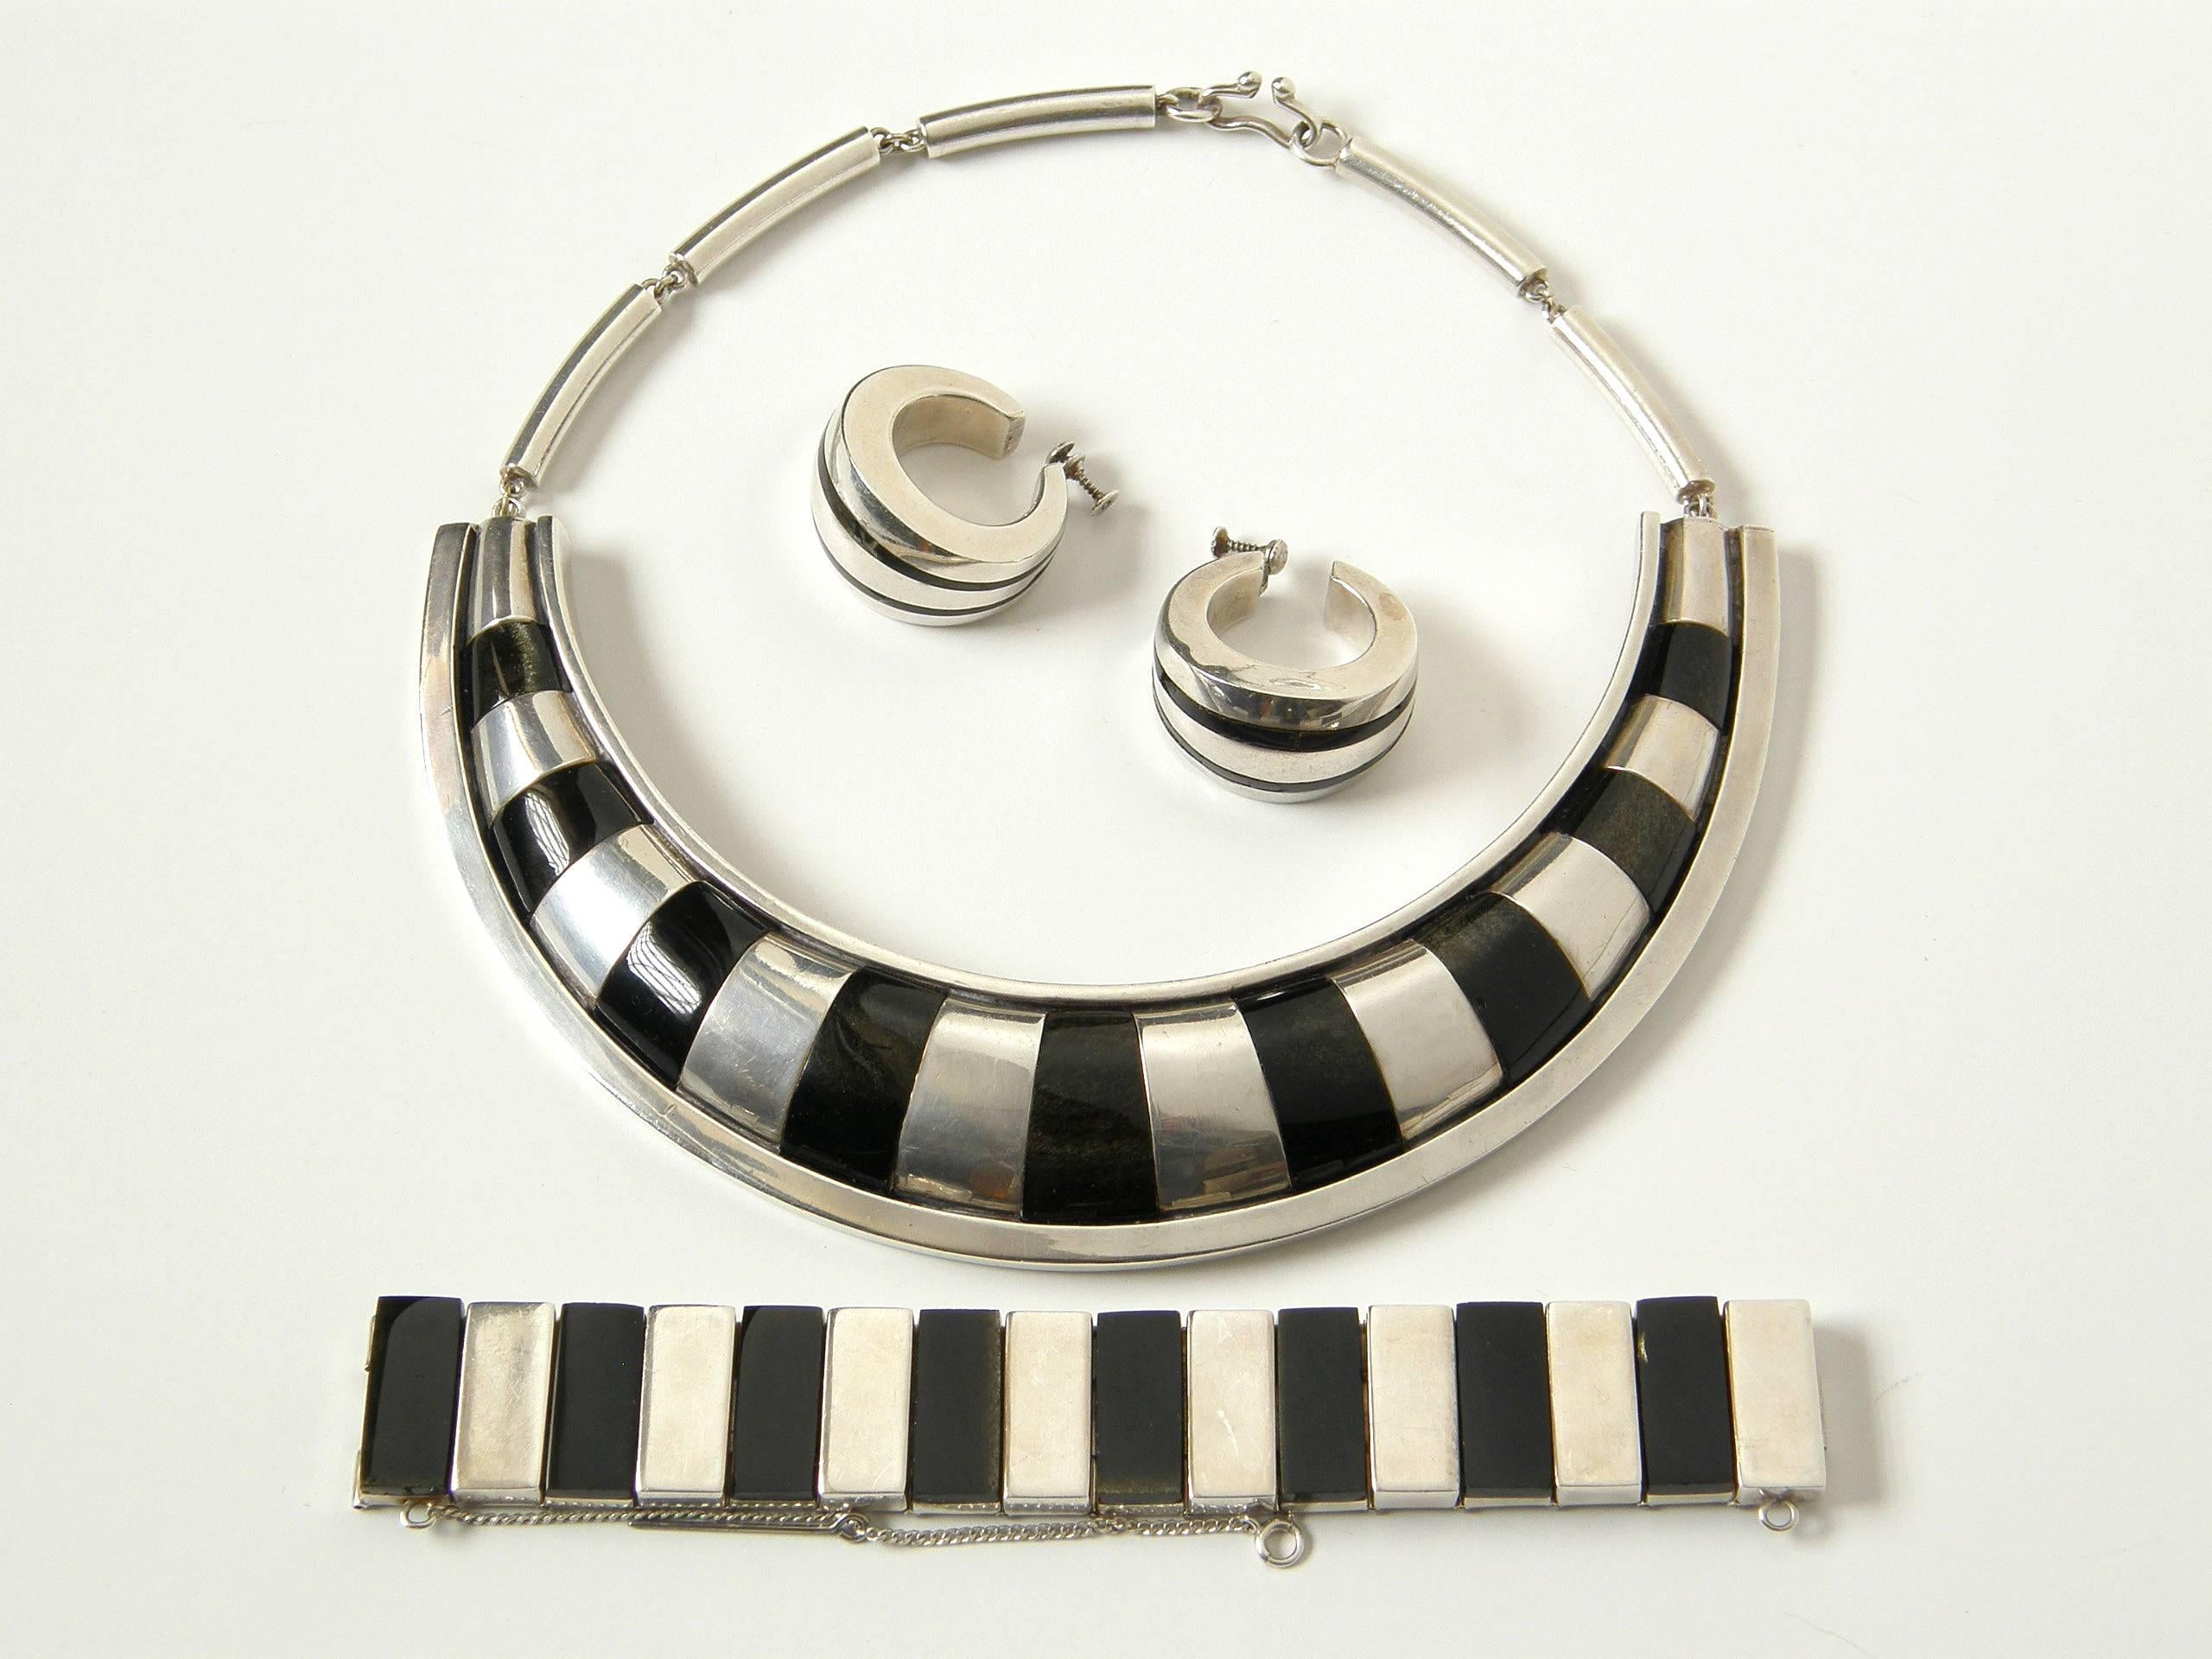 Auffälliges Set aus Halskette, Armband und Ohrringen von Piedra Y Plata, der Silberwerkstatt von Felipe Martinez in Taxco. Die geometrischen Designs nutzen den Kontrast zwischen dem Sterling und dem Obsidian mit großer Wirkung. Als dreiteilige